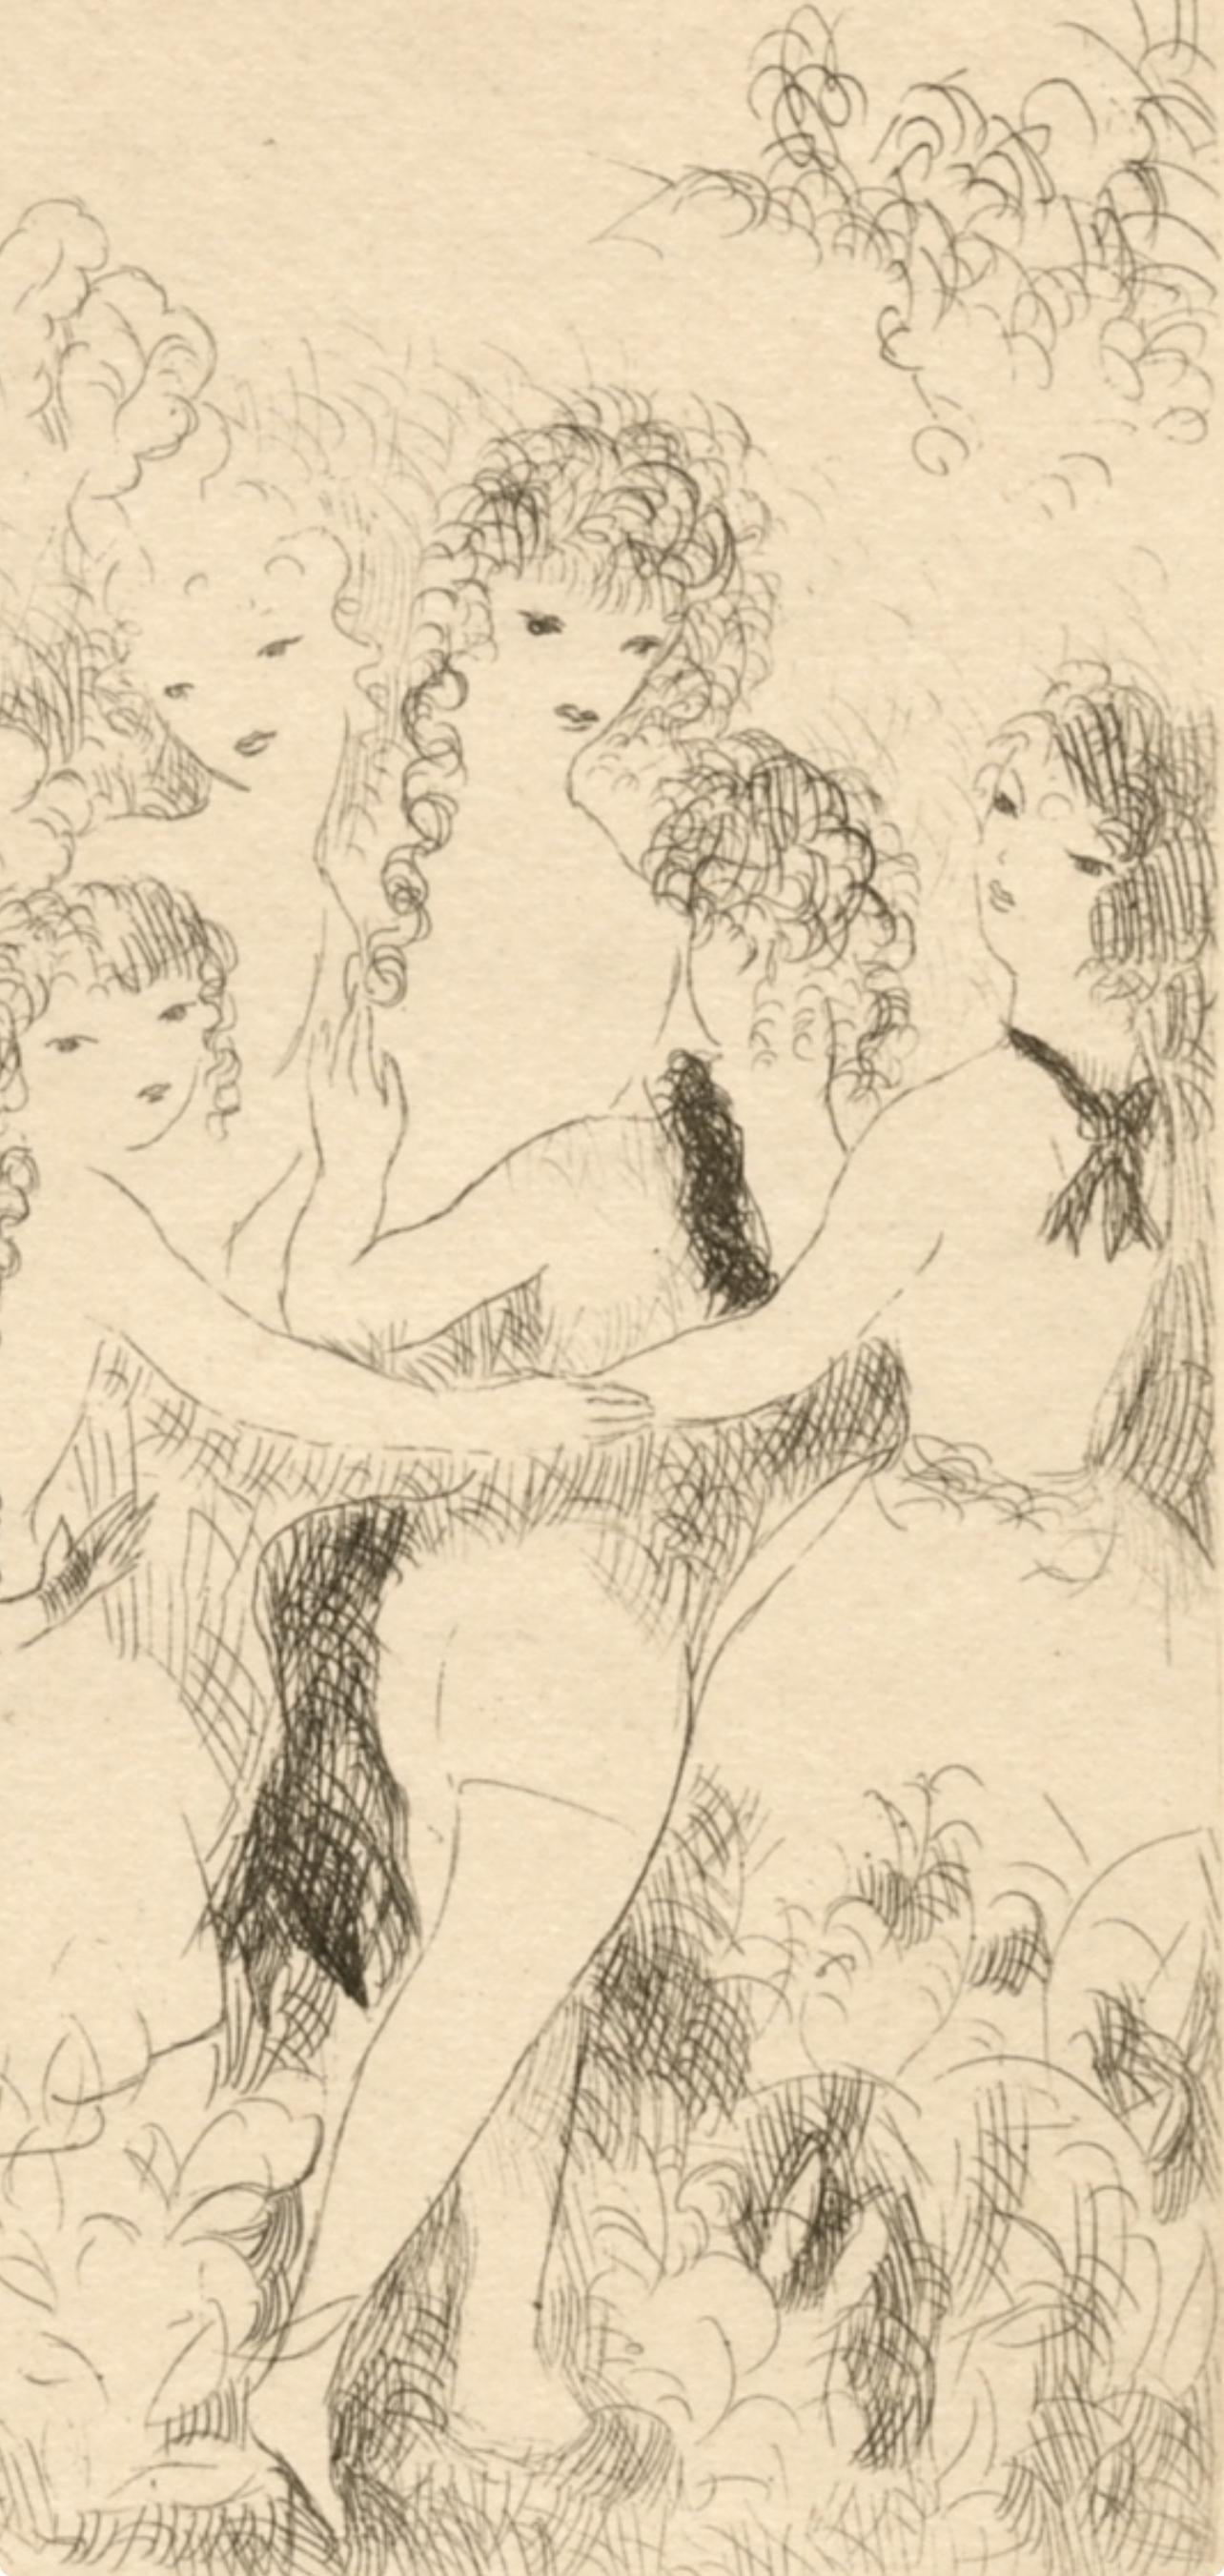 Laurencin, La Ronde, Dix filles dans un pré (after) - Print by Marie Laurencin